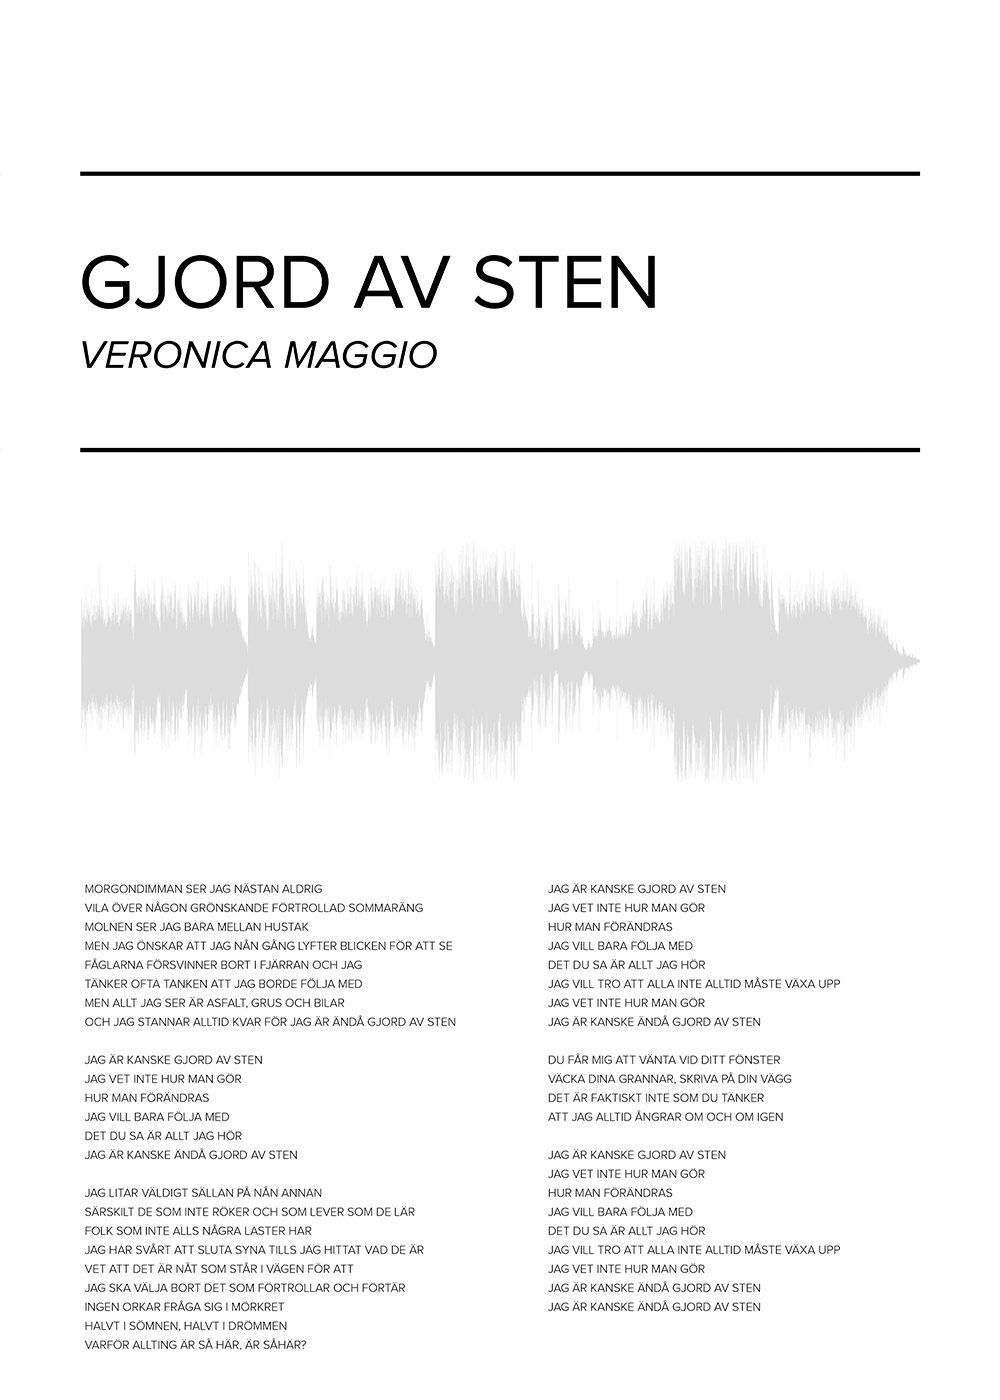 Veronica Maggio - Gjord av sten Poster